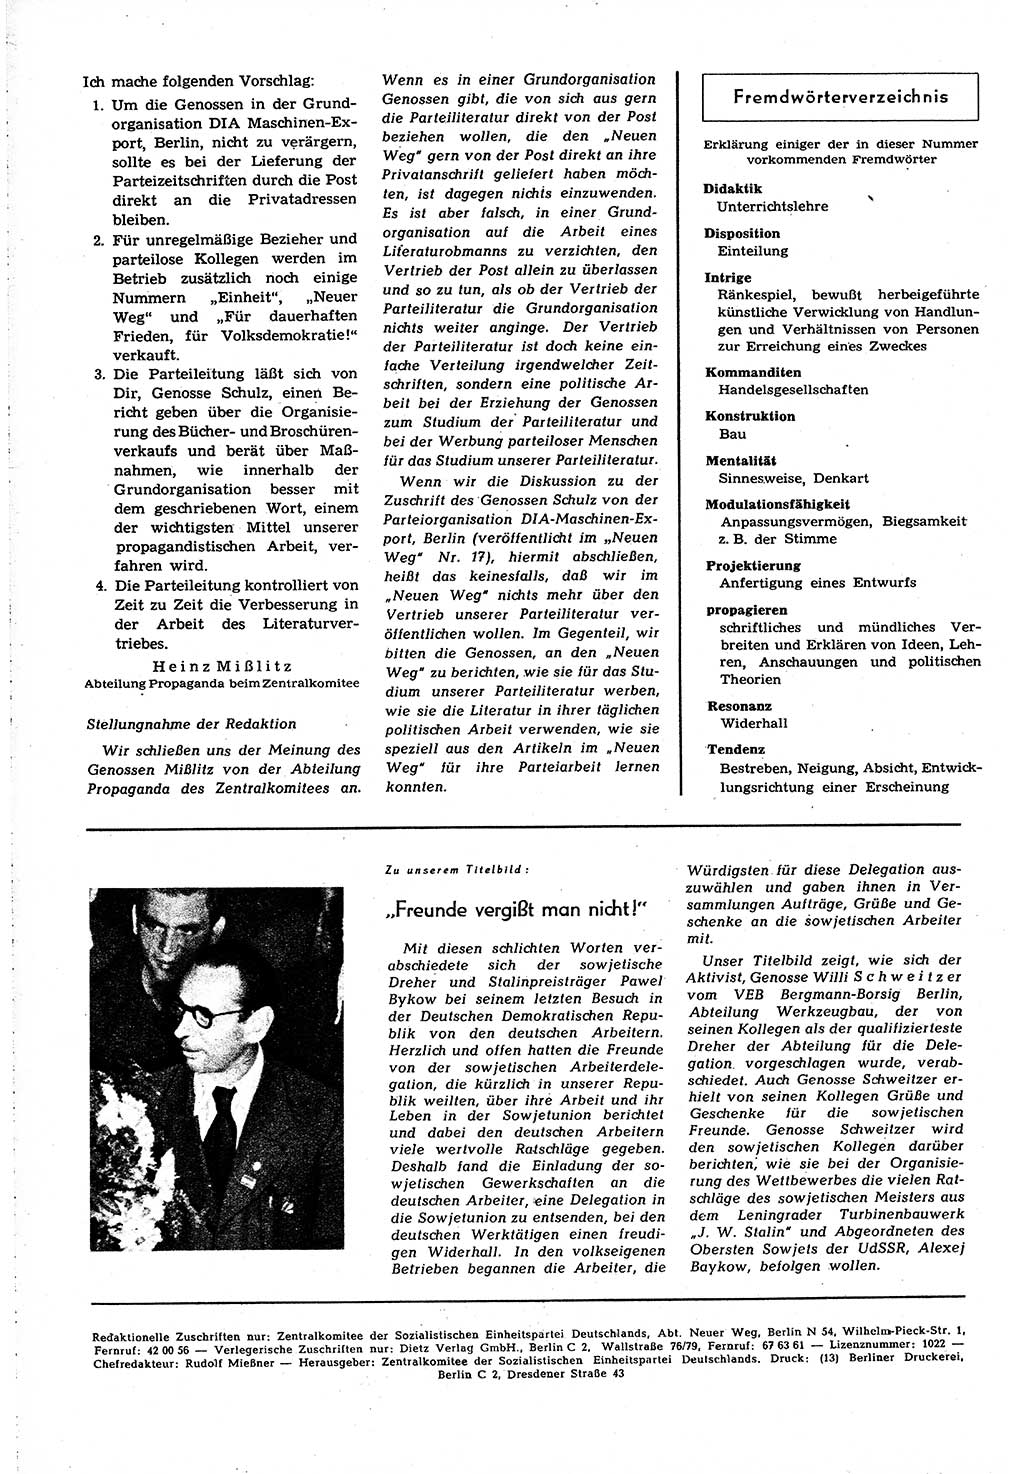 Neuer Weg (NW), Organ des Zentralkomitees (ZK) [Sozialistische Einheitspartei Deutschlands (SED)] für alle Parteiarbeiter, 8. Jahrgang [Deutsche Demokratische Republik (DDR)] 1953, Heft 21/44 (NW ZK SED DDR 1953, H. 21/44)